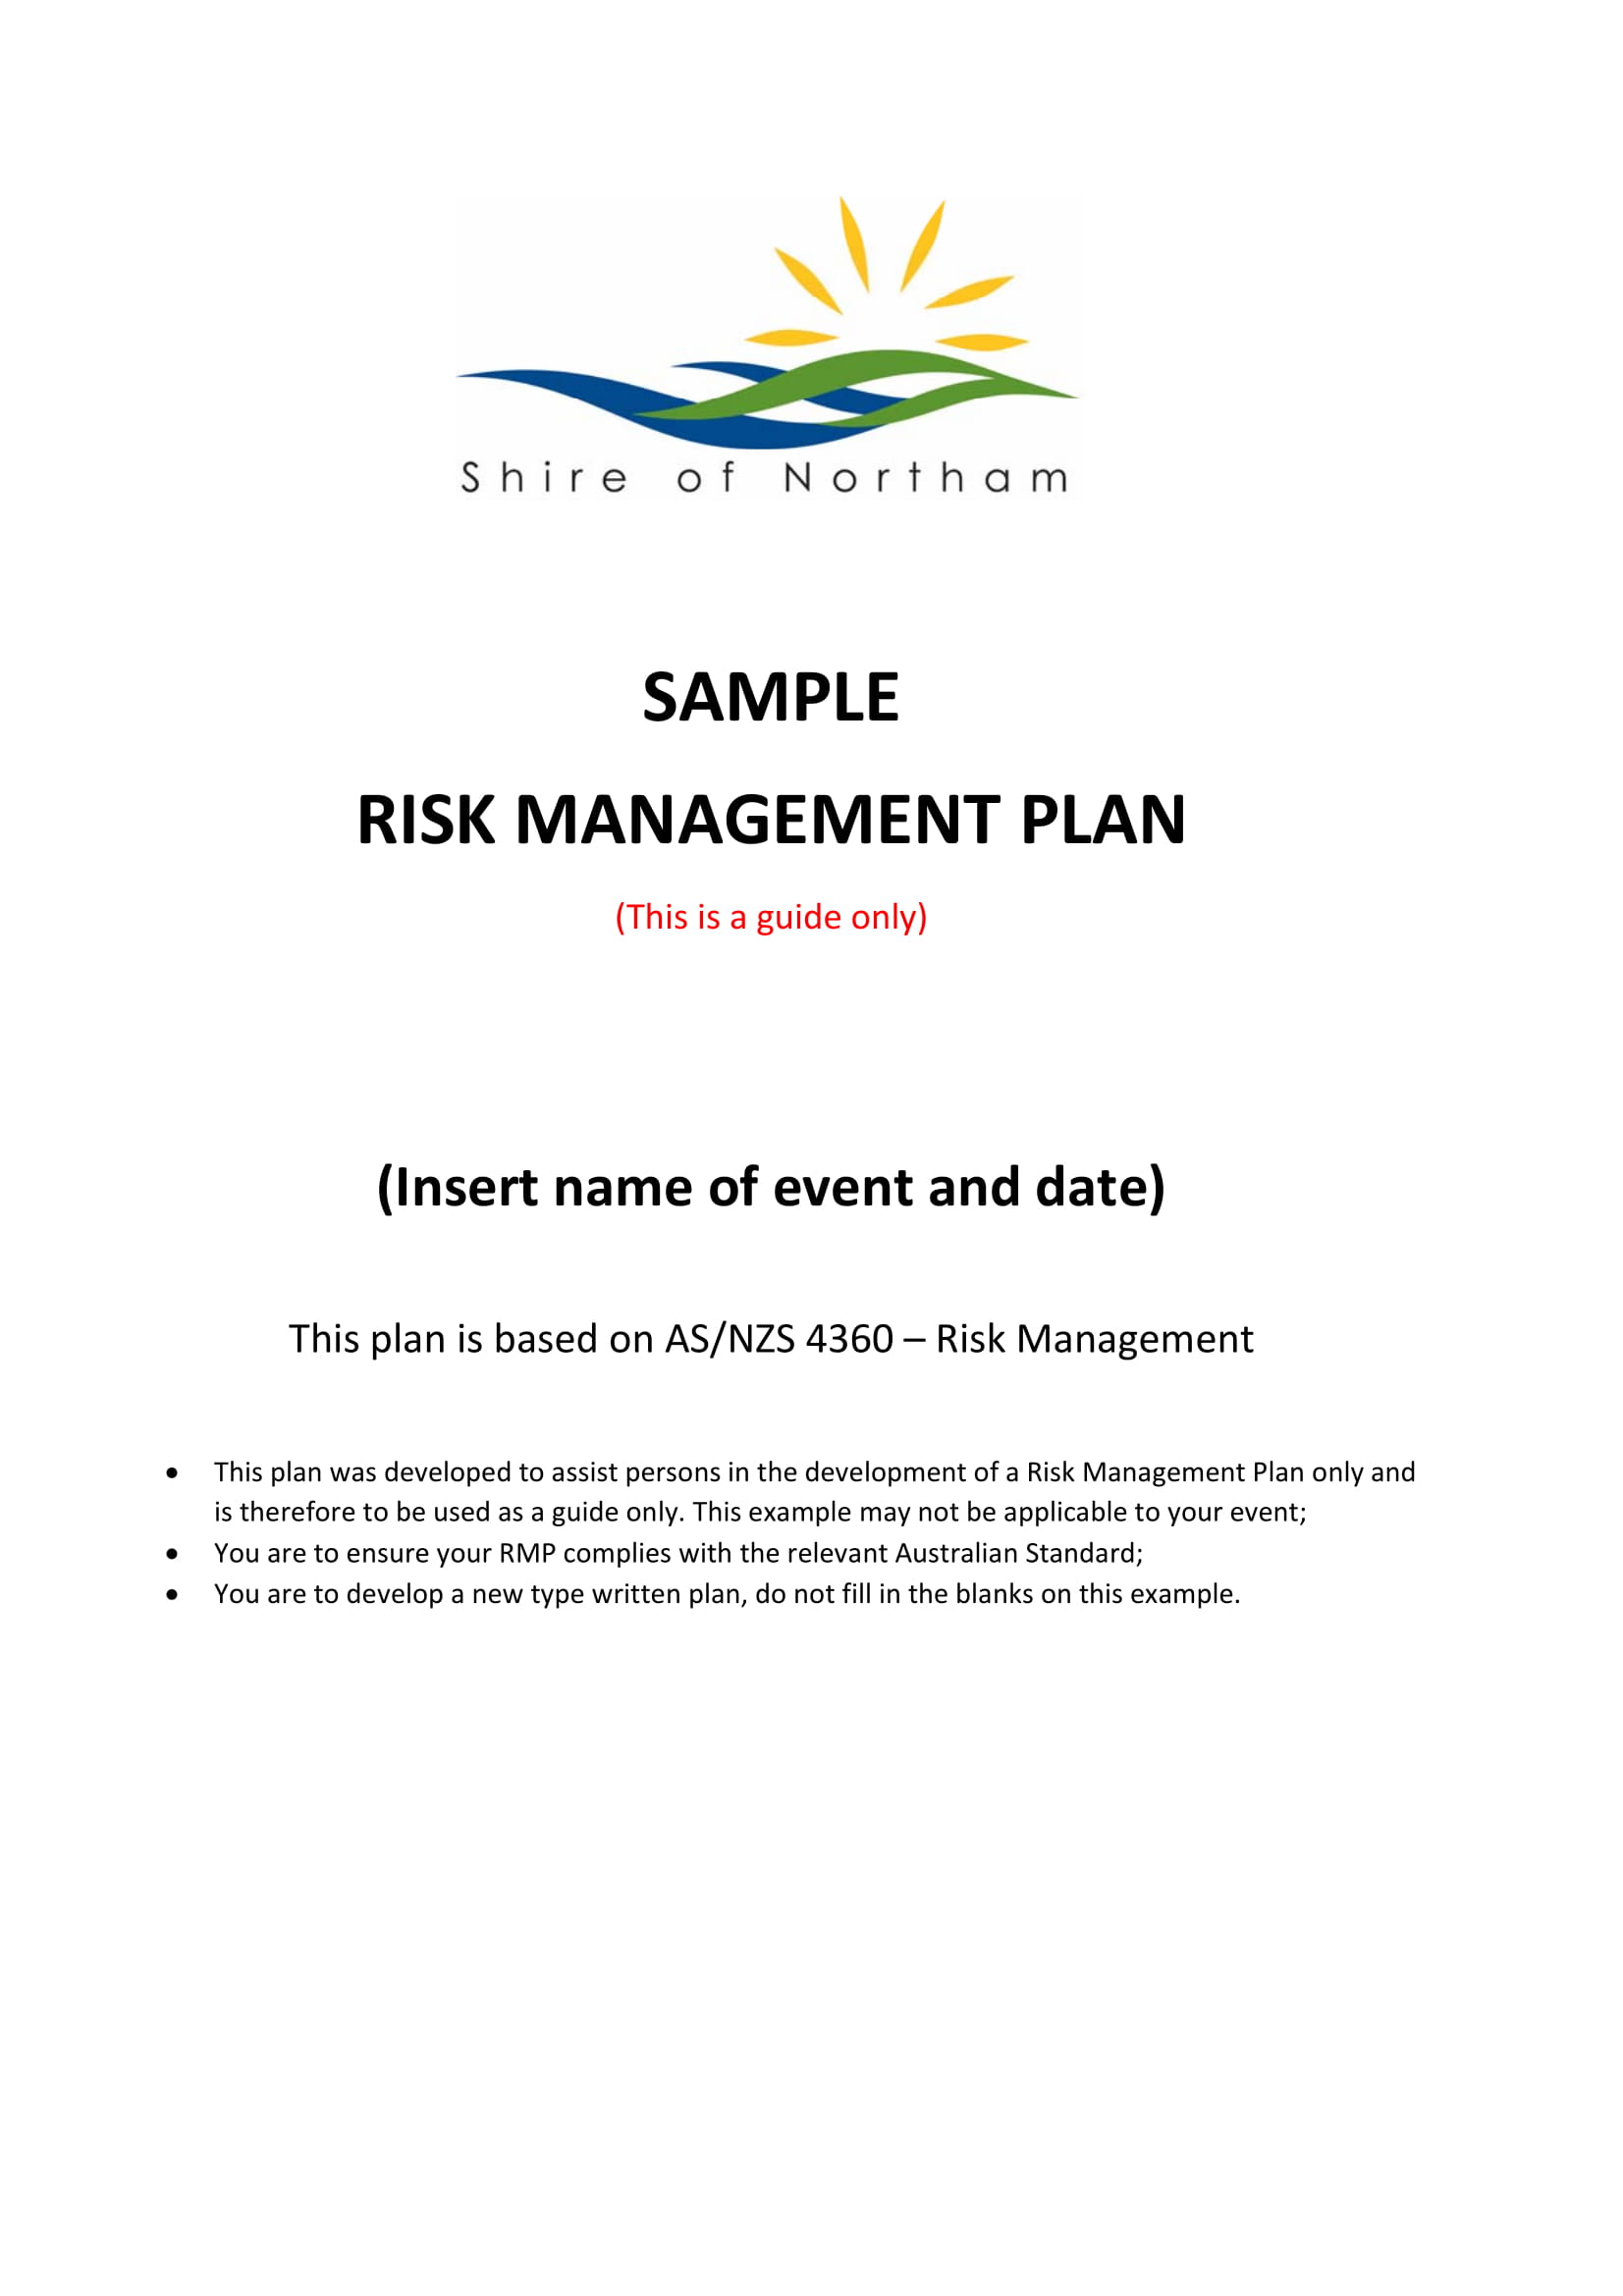 SAMPLE RISK MANAGEMENT PLAN 01